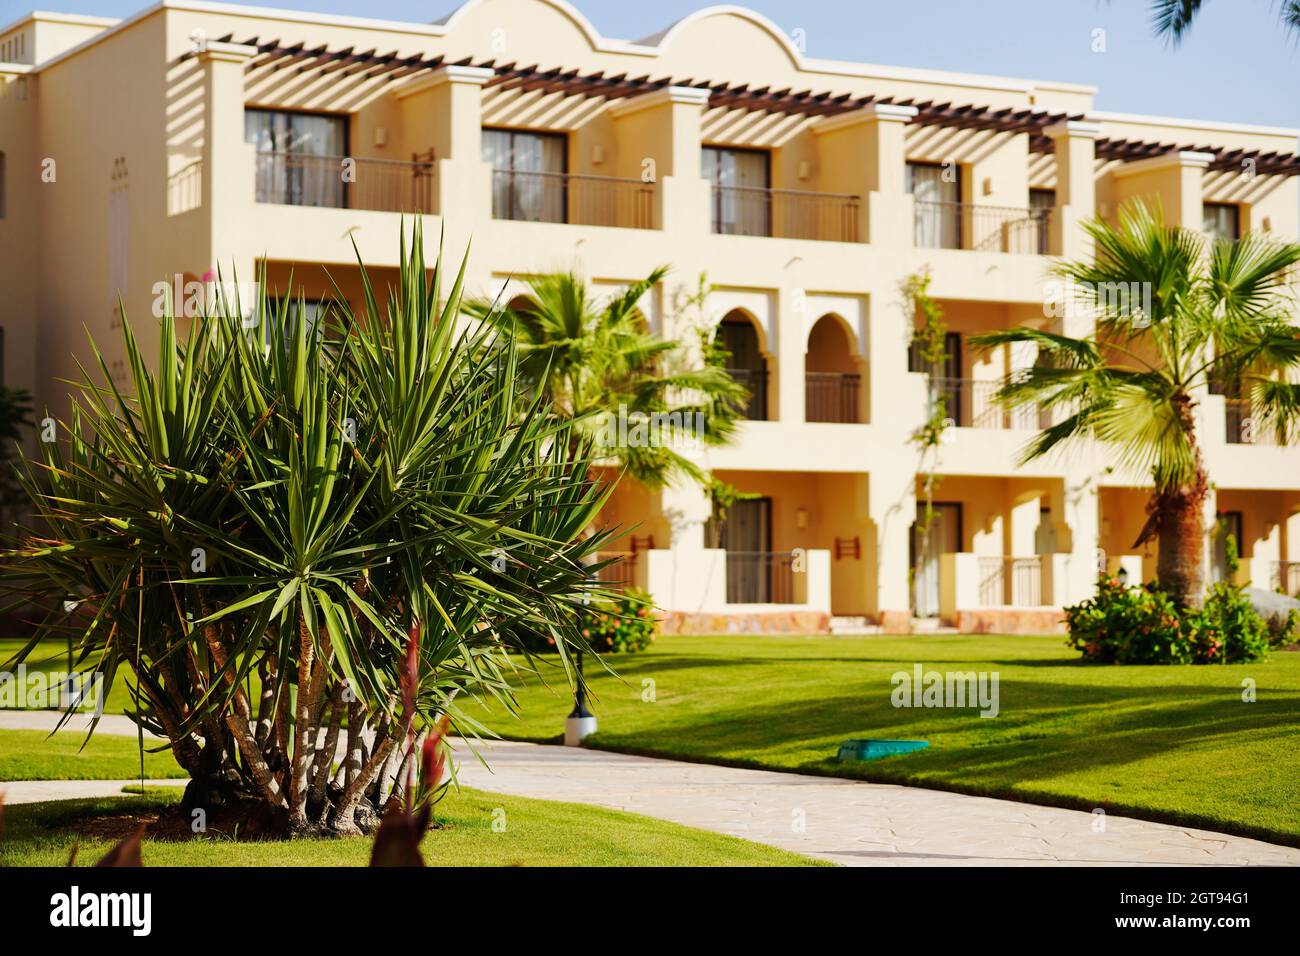 Complejo vacacional. Hotel egipcio de lujo con palmeras, césped verde perfecto y cielo azul claro. Foto de stock